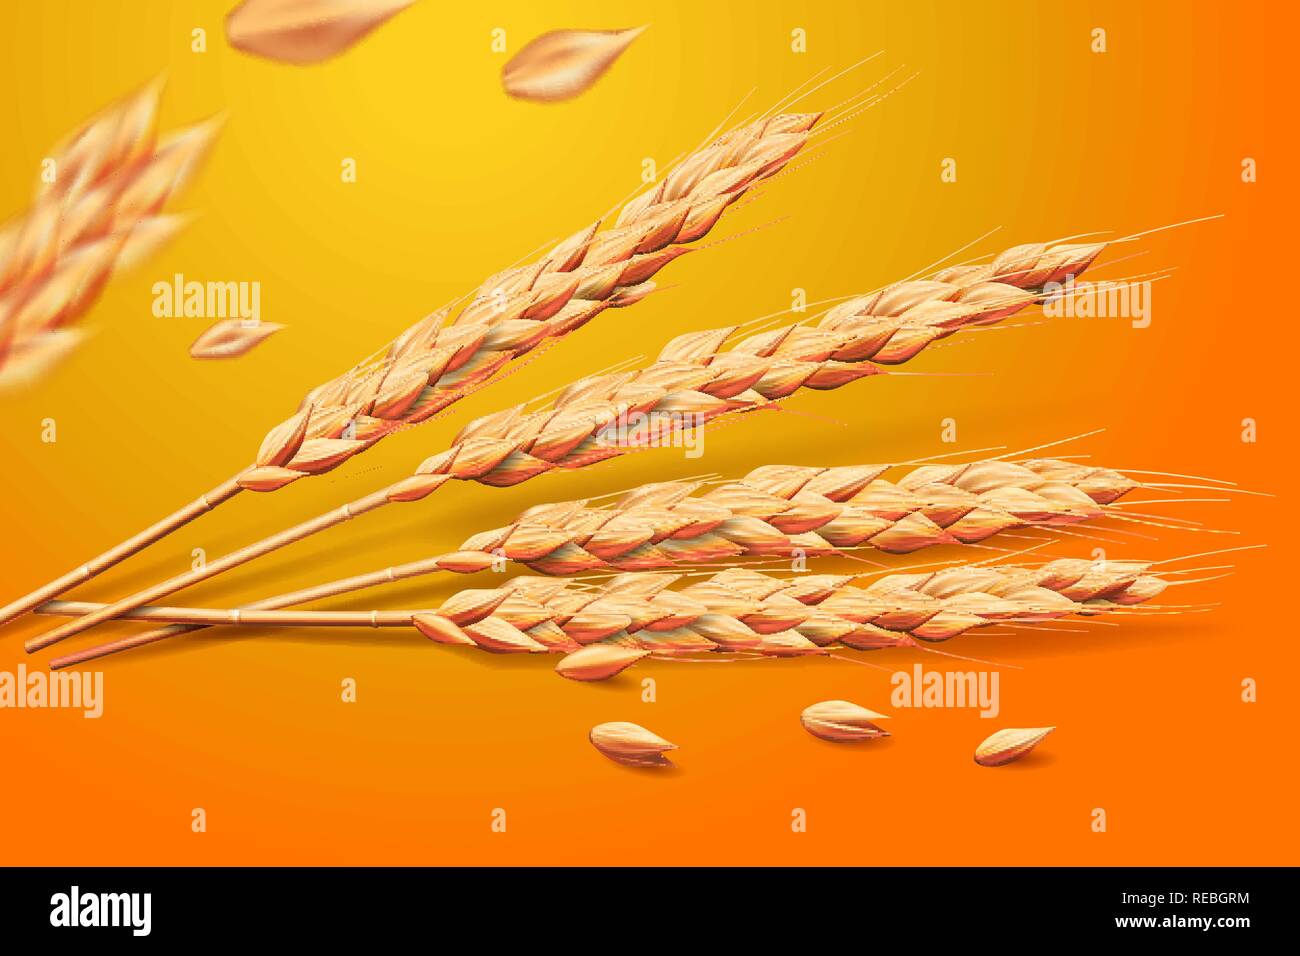 Realistische Weizen Gerste Hafer Elemente. Detaillierte auf goldenem Hintergrund für gesunde Ernährung oder Landwirtschaft design isoliert. Vector 3d-Abbildung. Stock Vektor